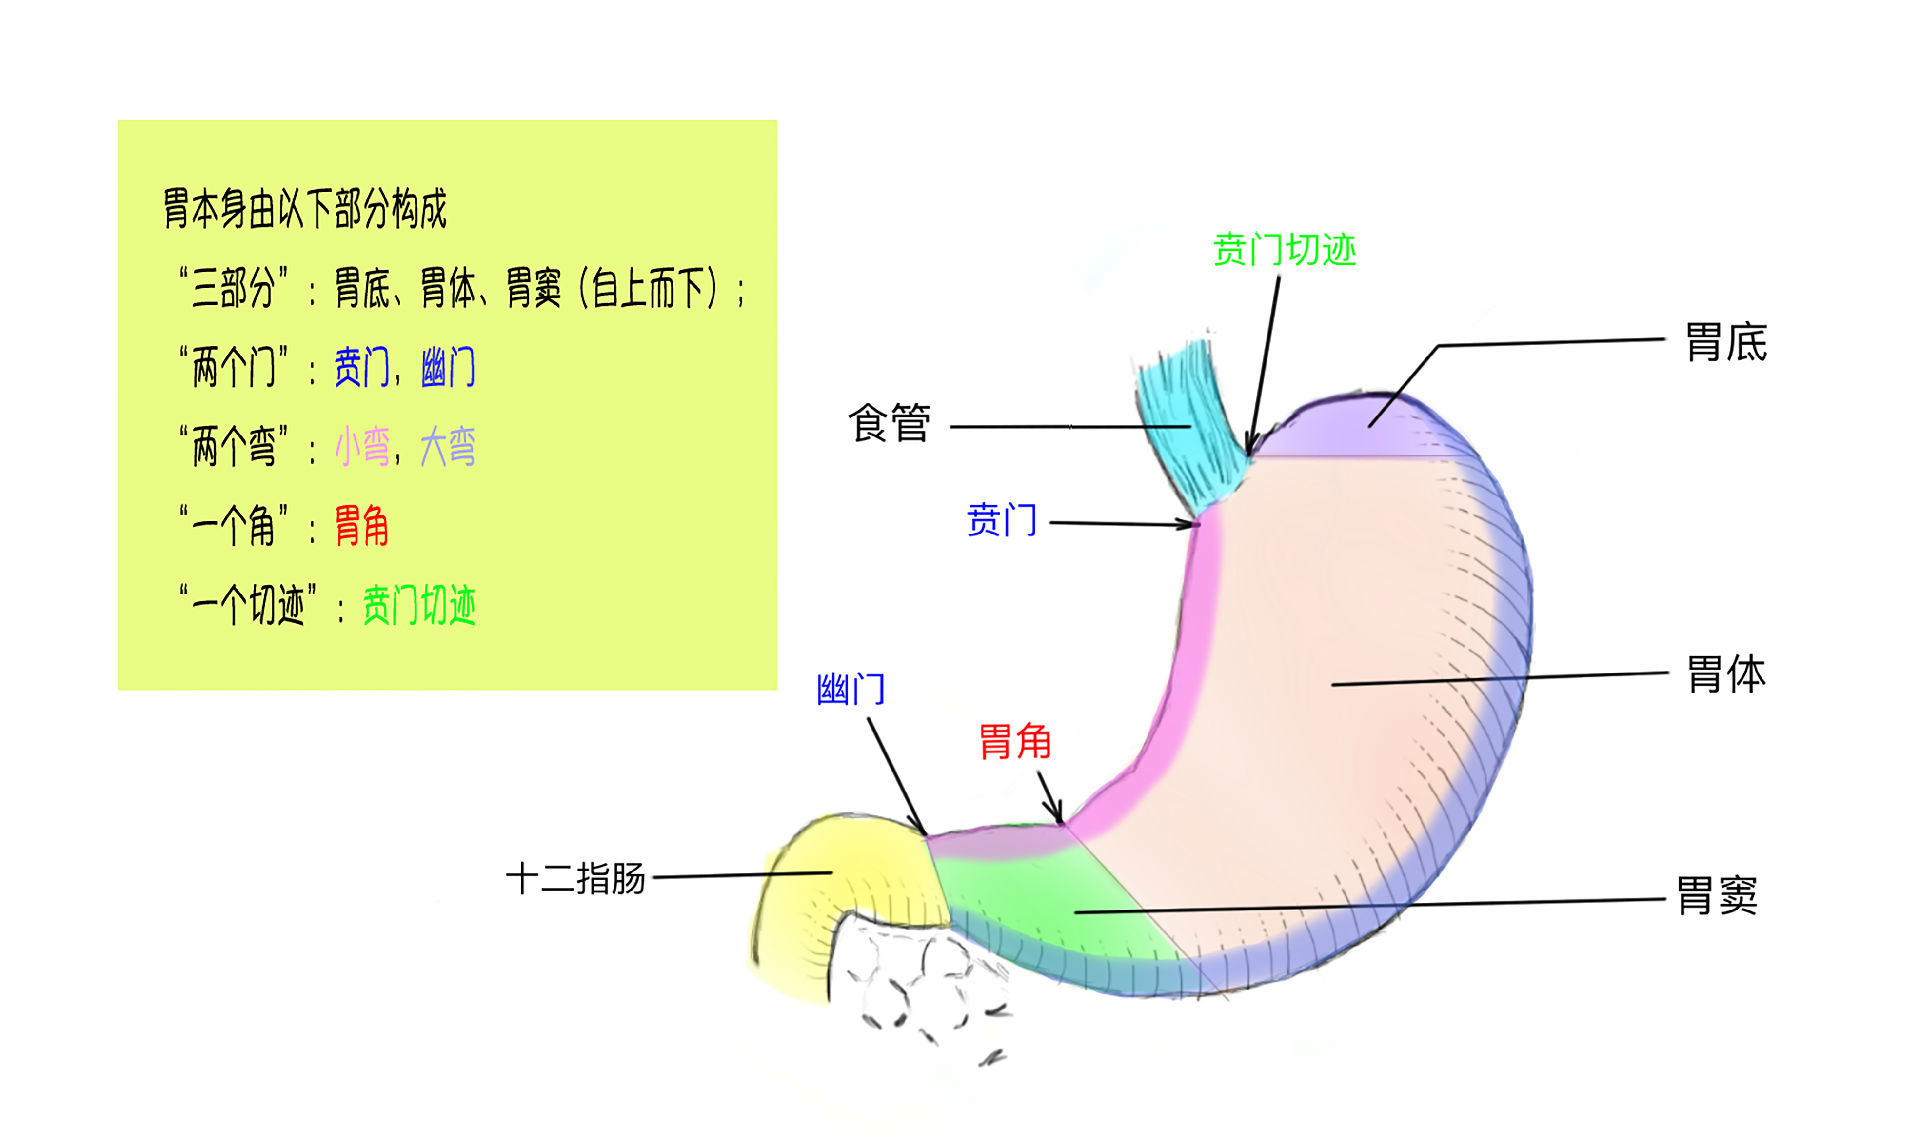 解剖学上:胃由底,体,窦三个部分组成进口为贲门,出口为幽门